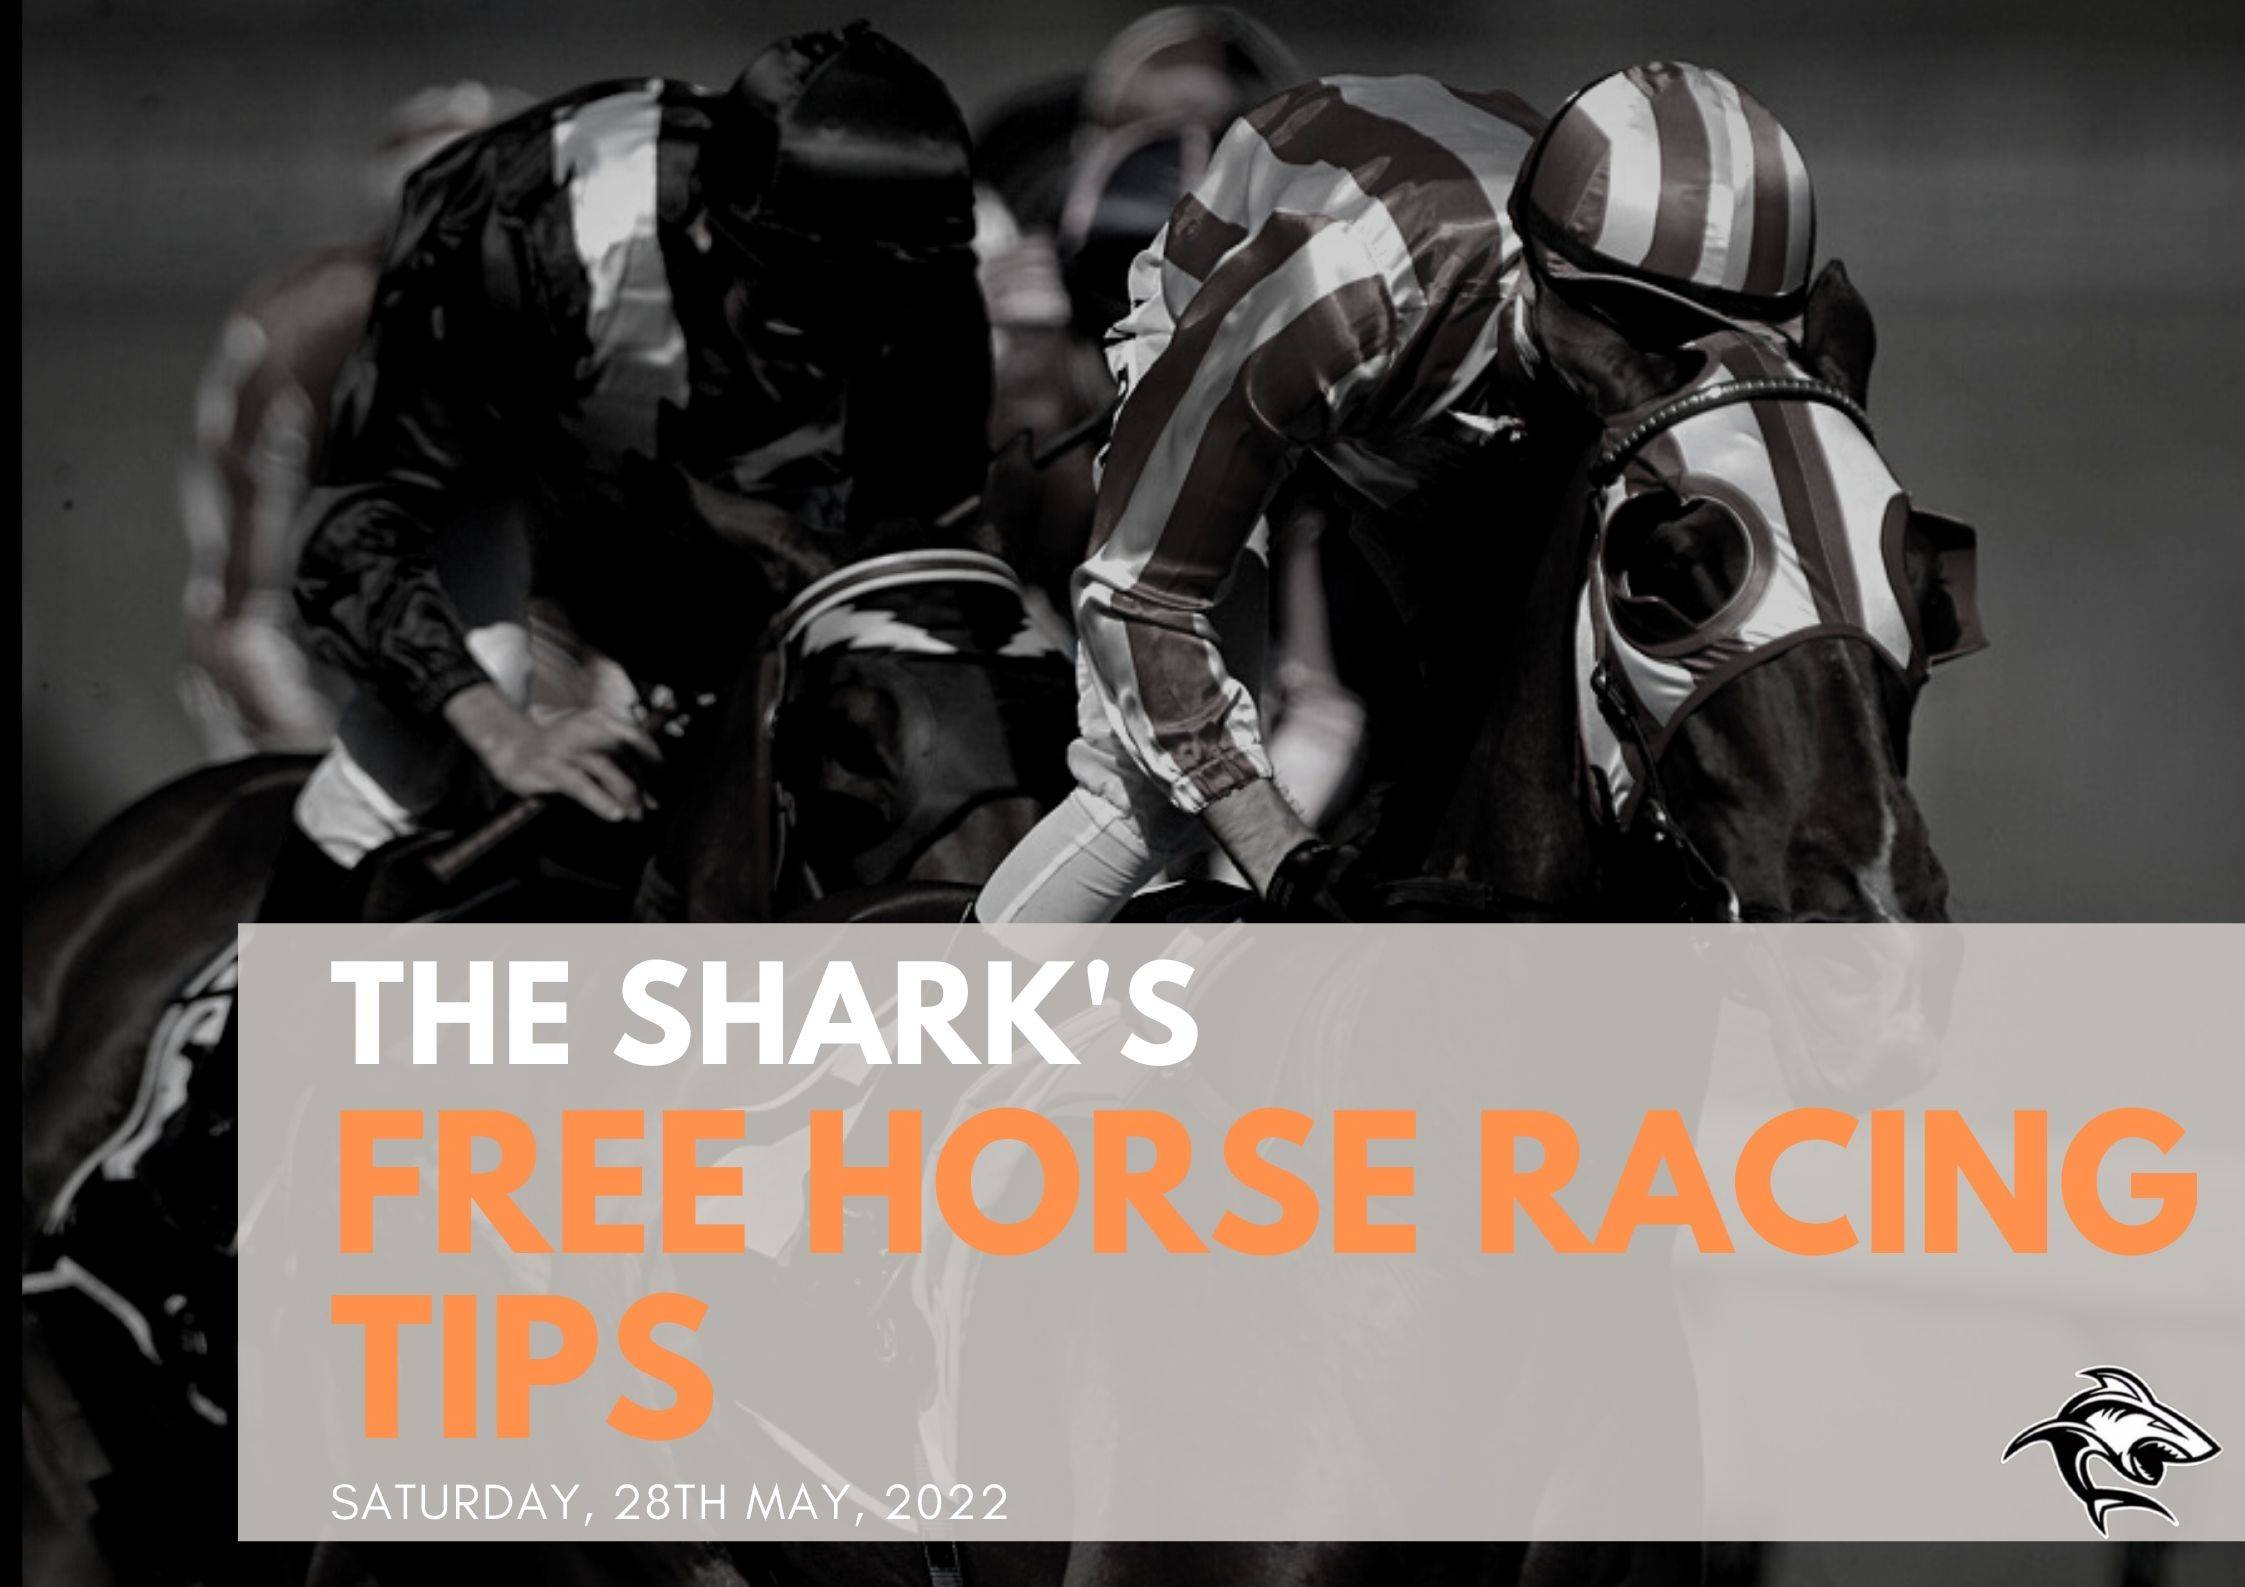 Free Horse Racing Tips - 28th May